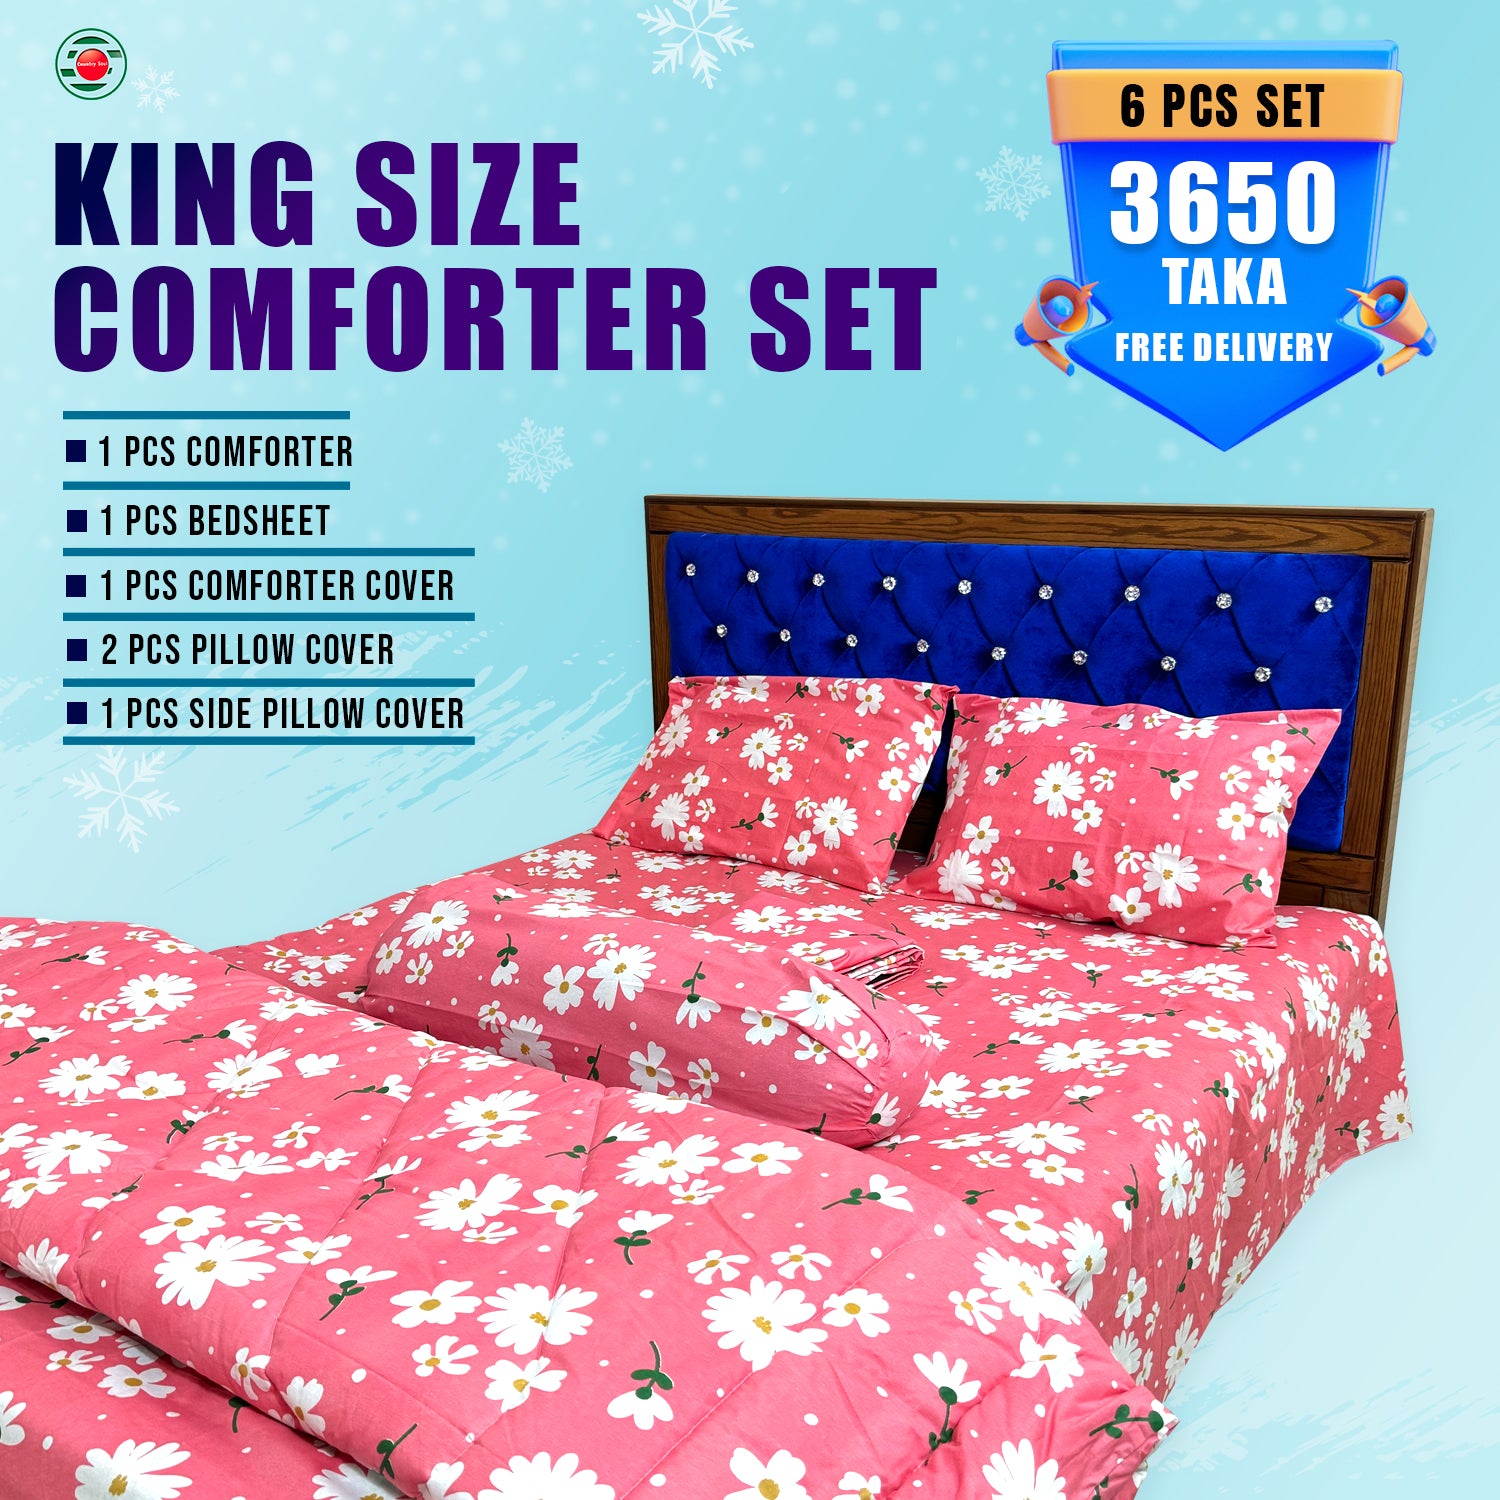 KING SIZE COMFORTER SET (6 PCS SET) 3 Pcs Pillow Cover Free